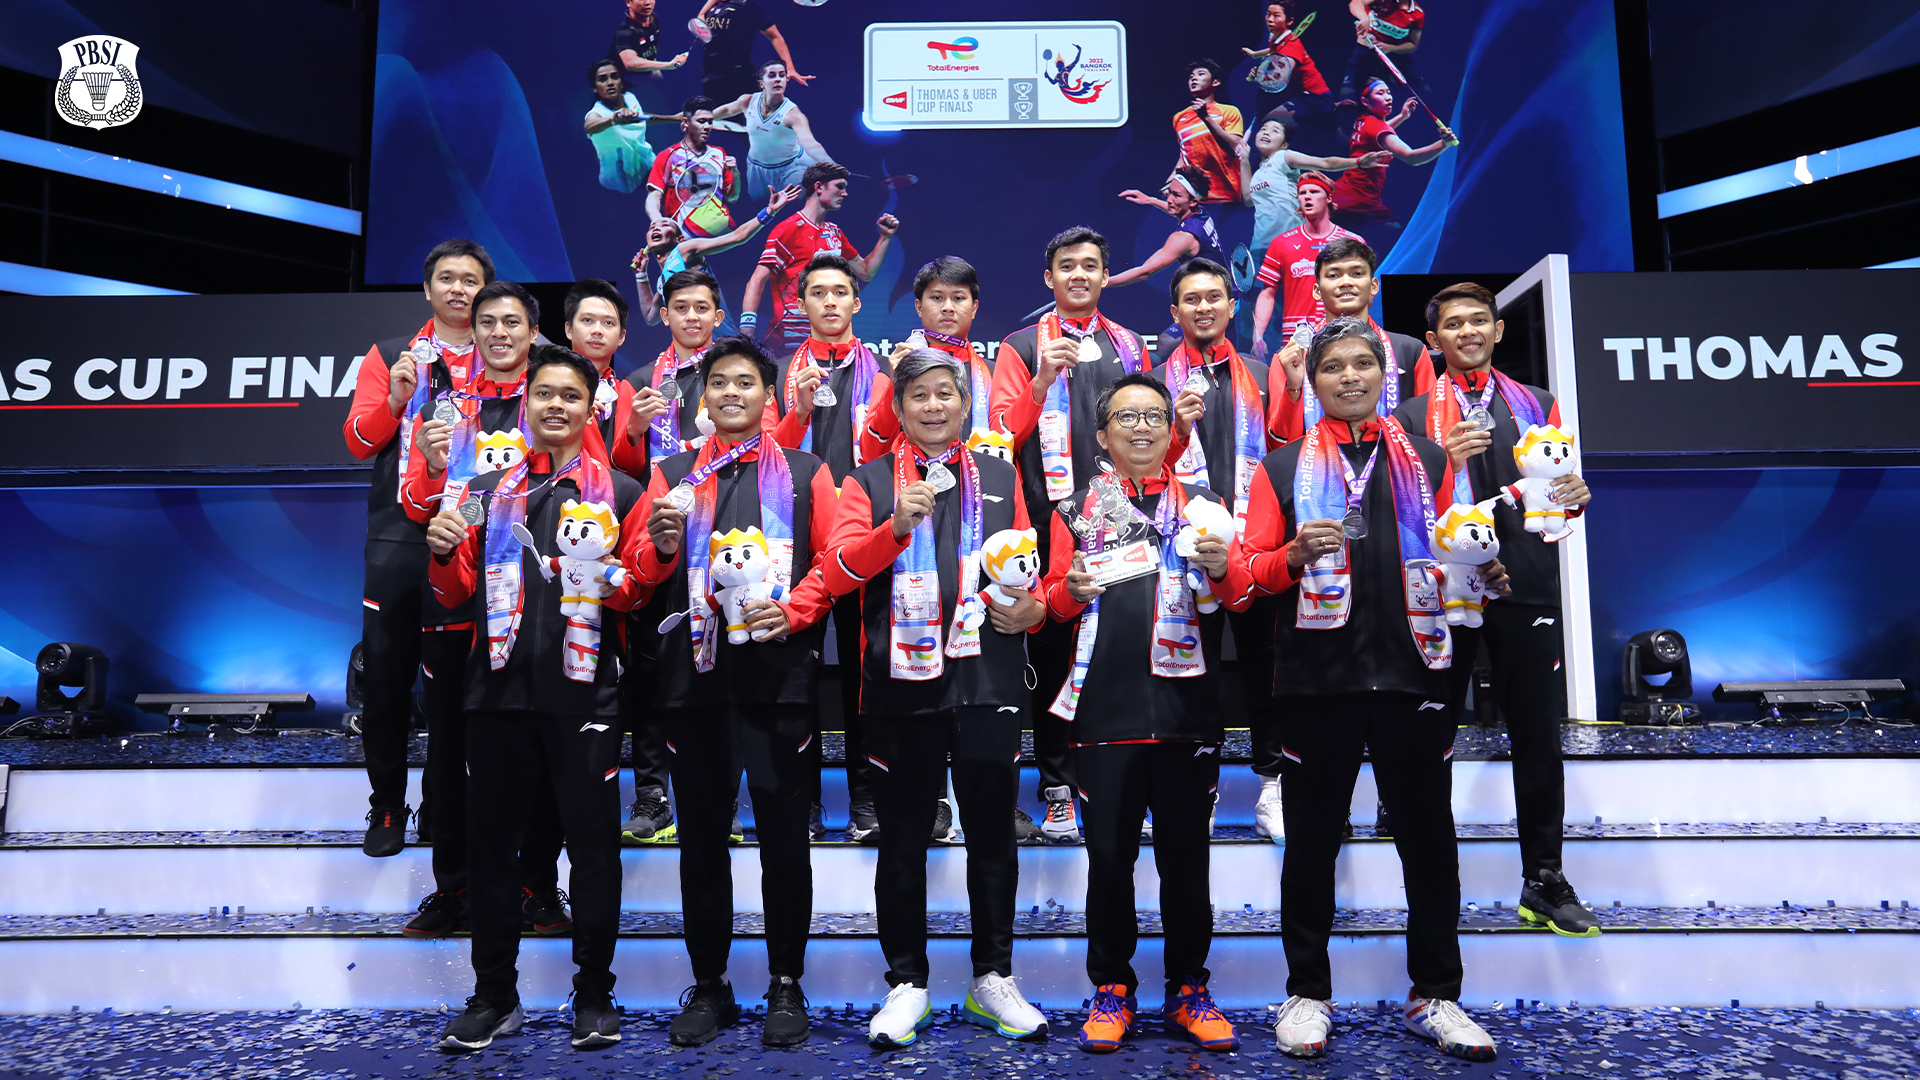 Gagal Pertahankan Gelar Thomas Cup, Tim Putra Indonesia Fokus ke Olimpiade Paris 2024